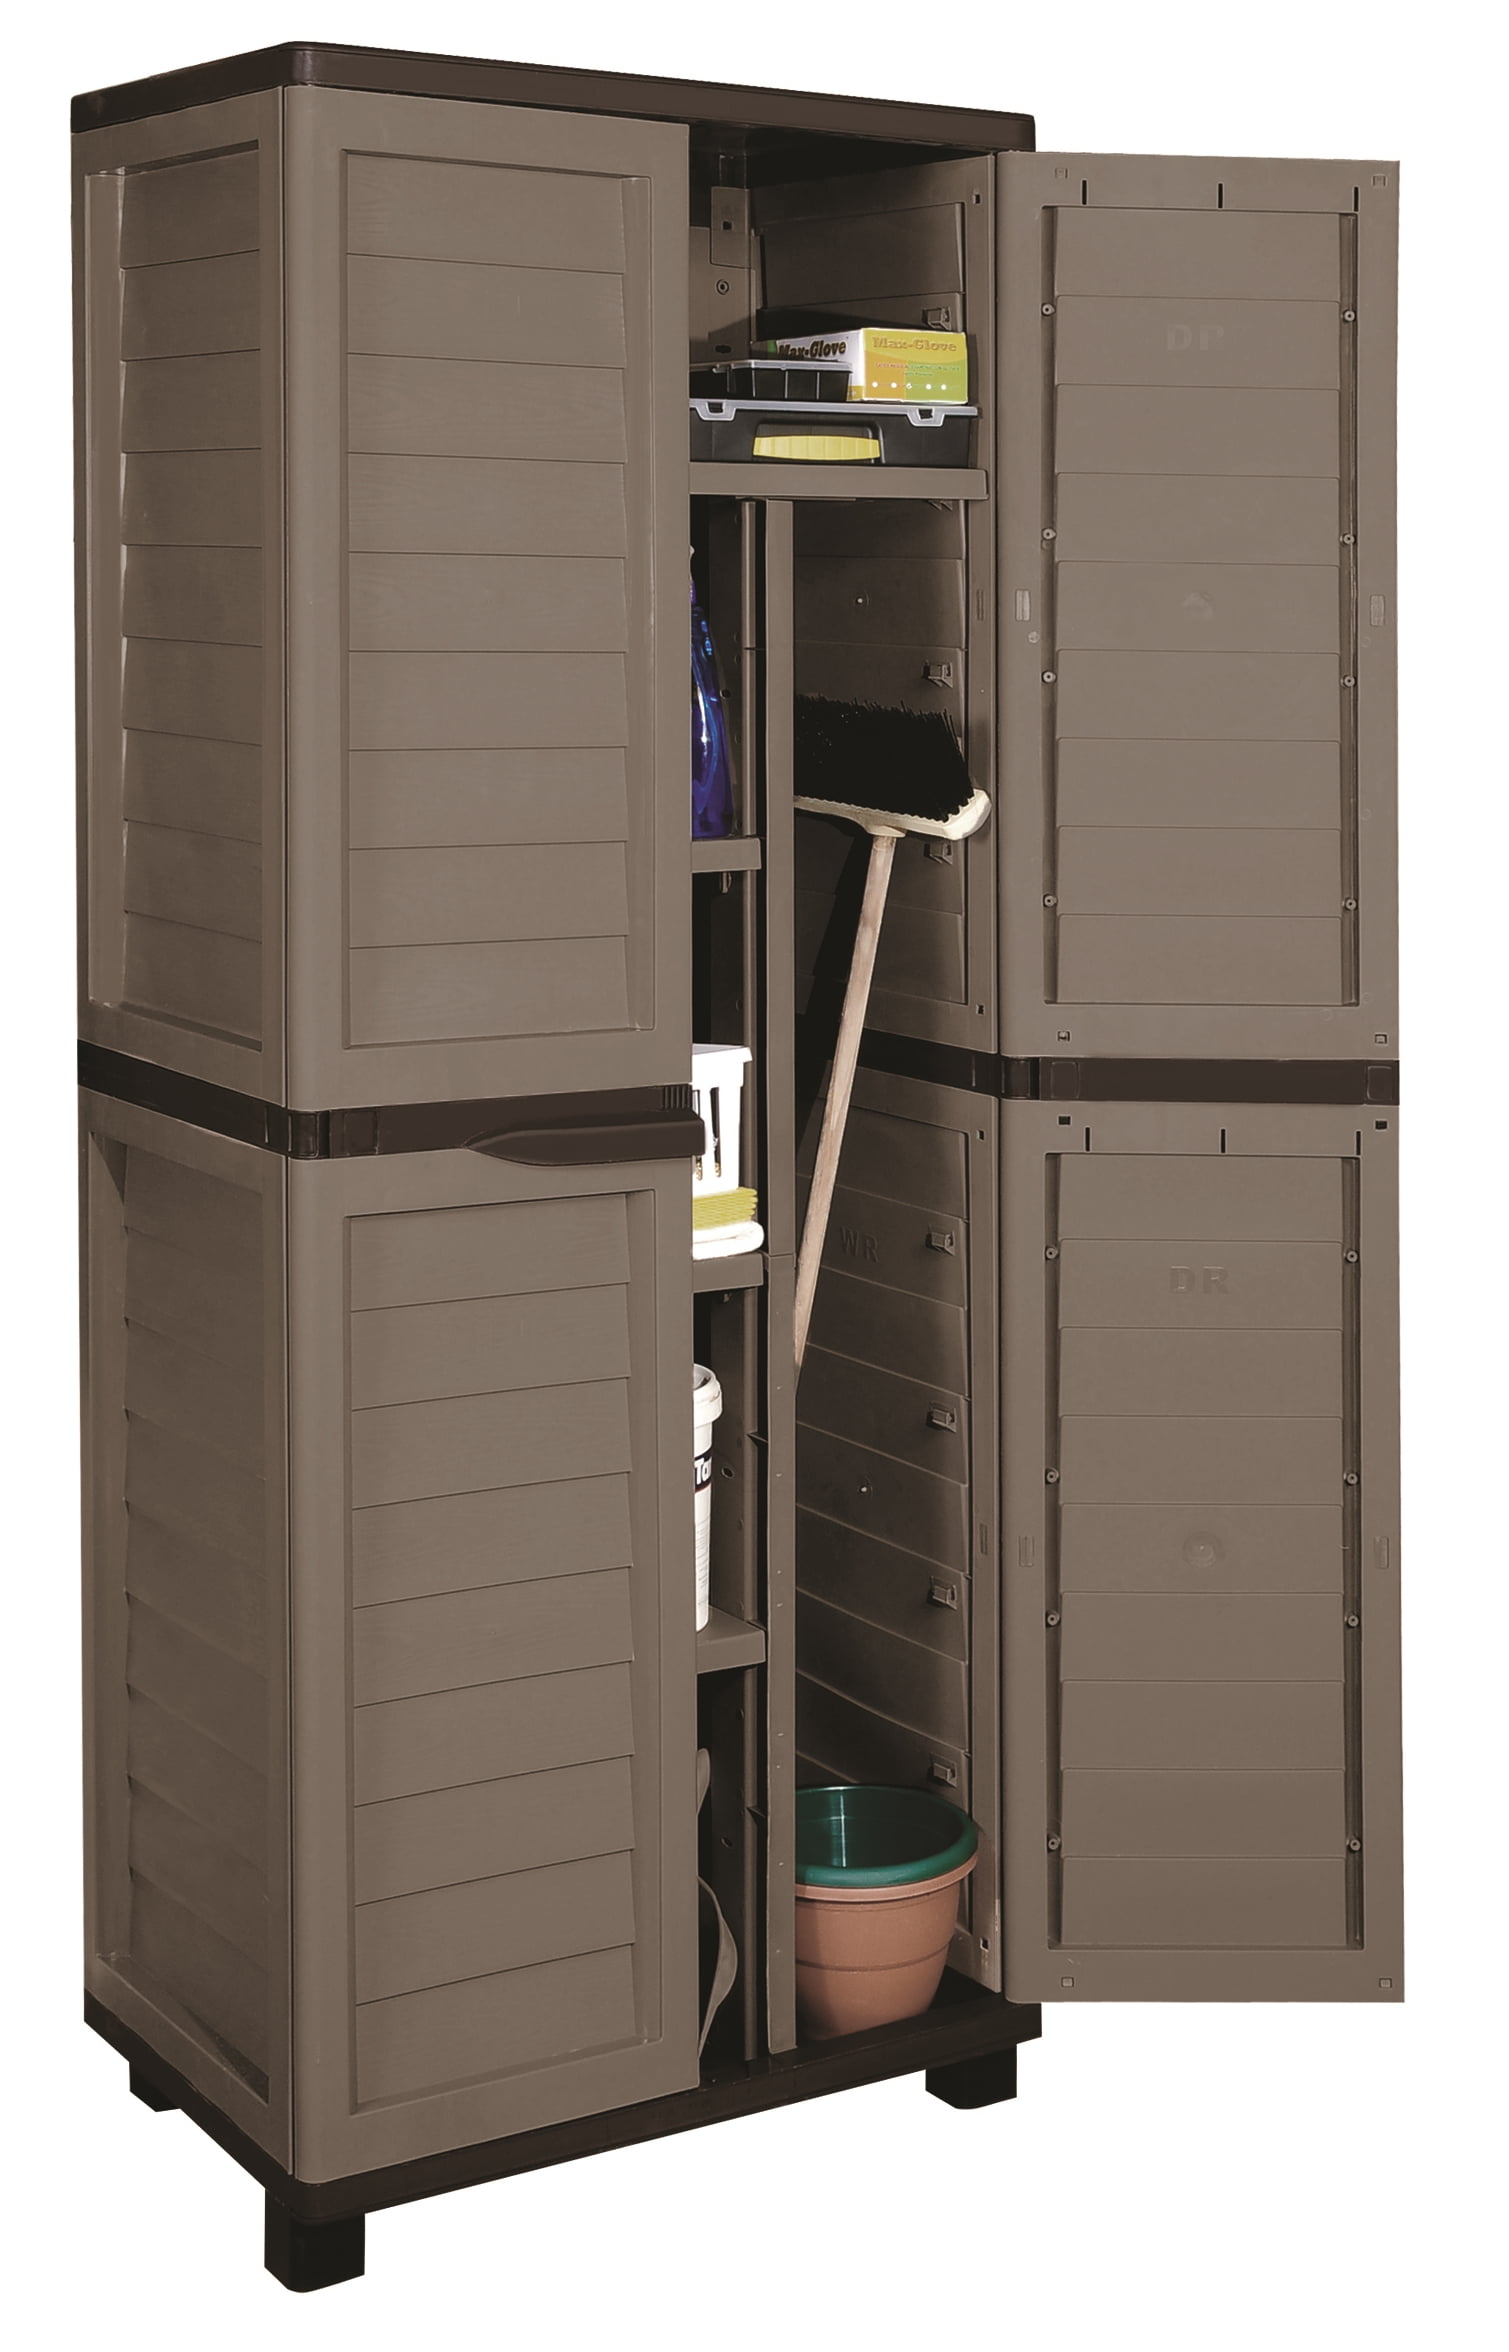 Starplast Storage Cabinet 73 6 H X 29